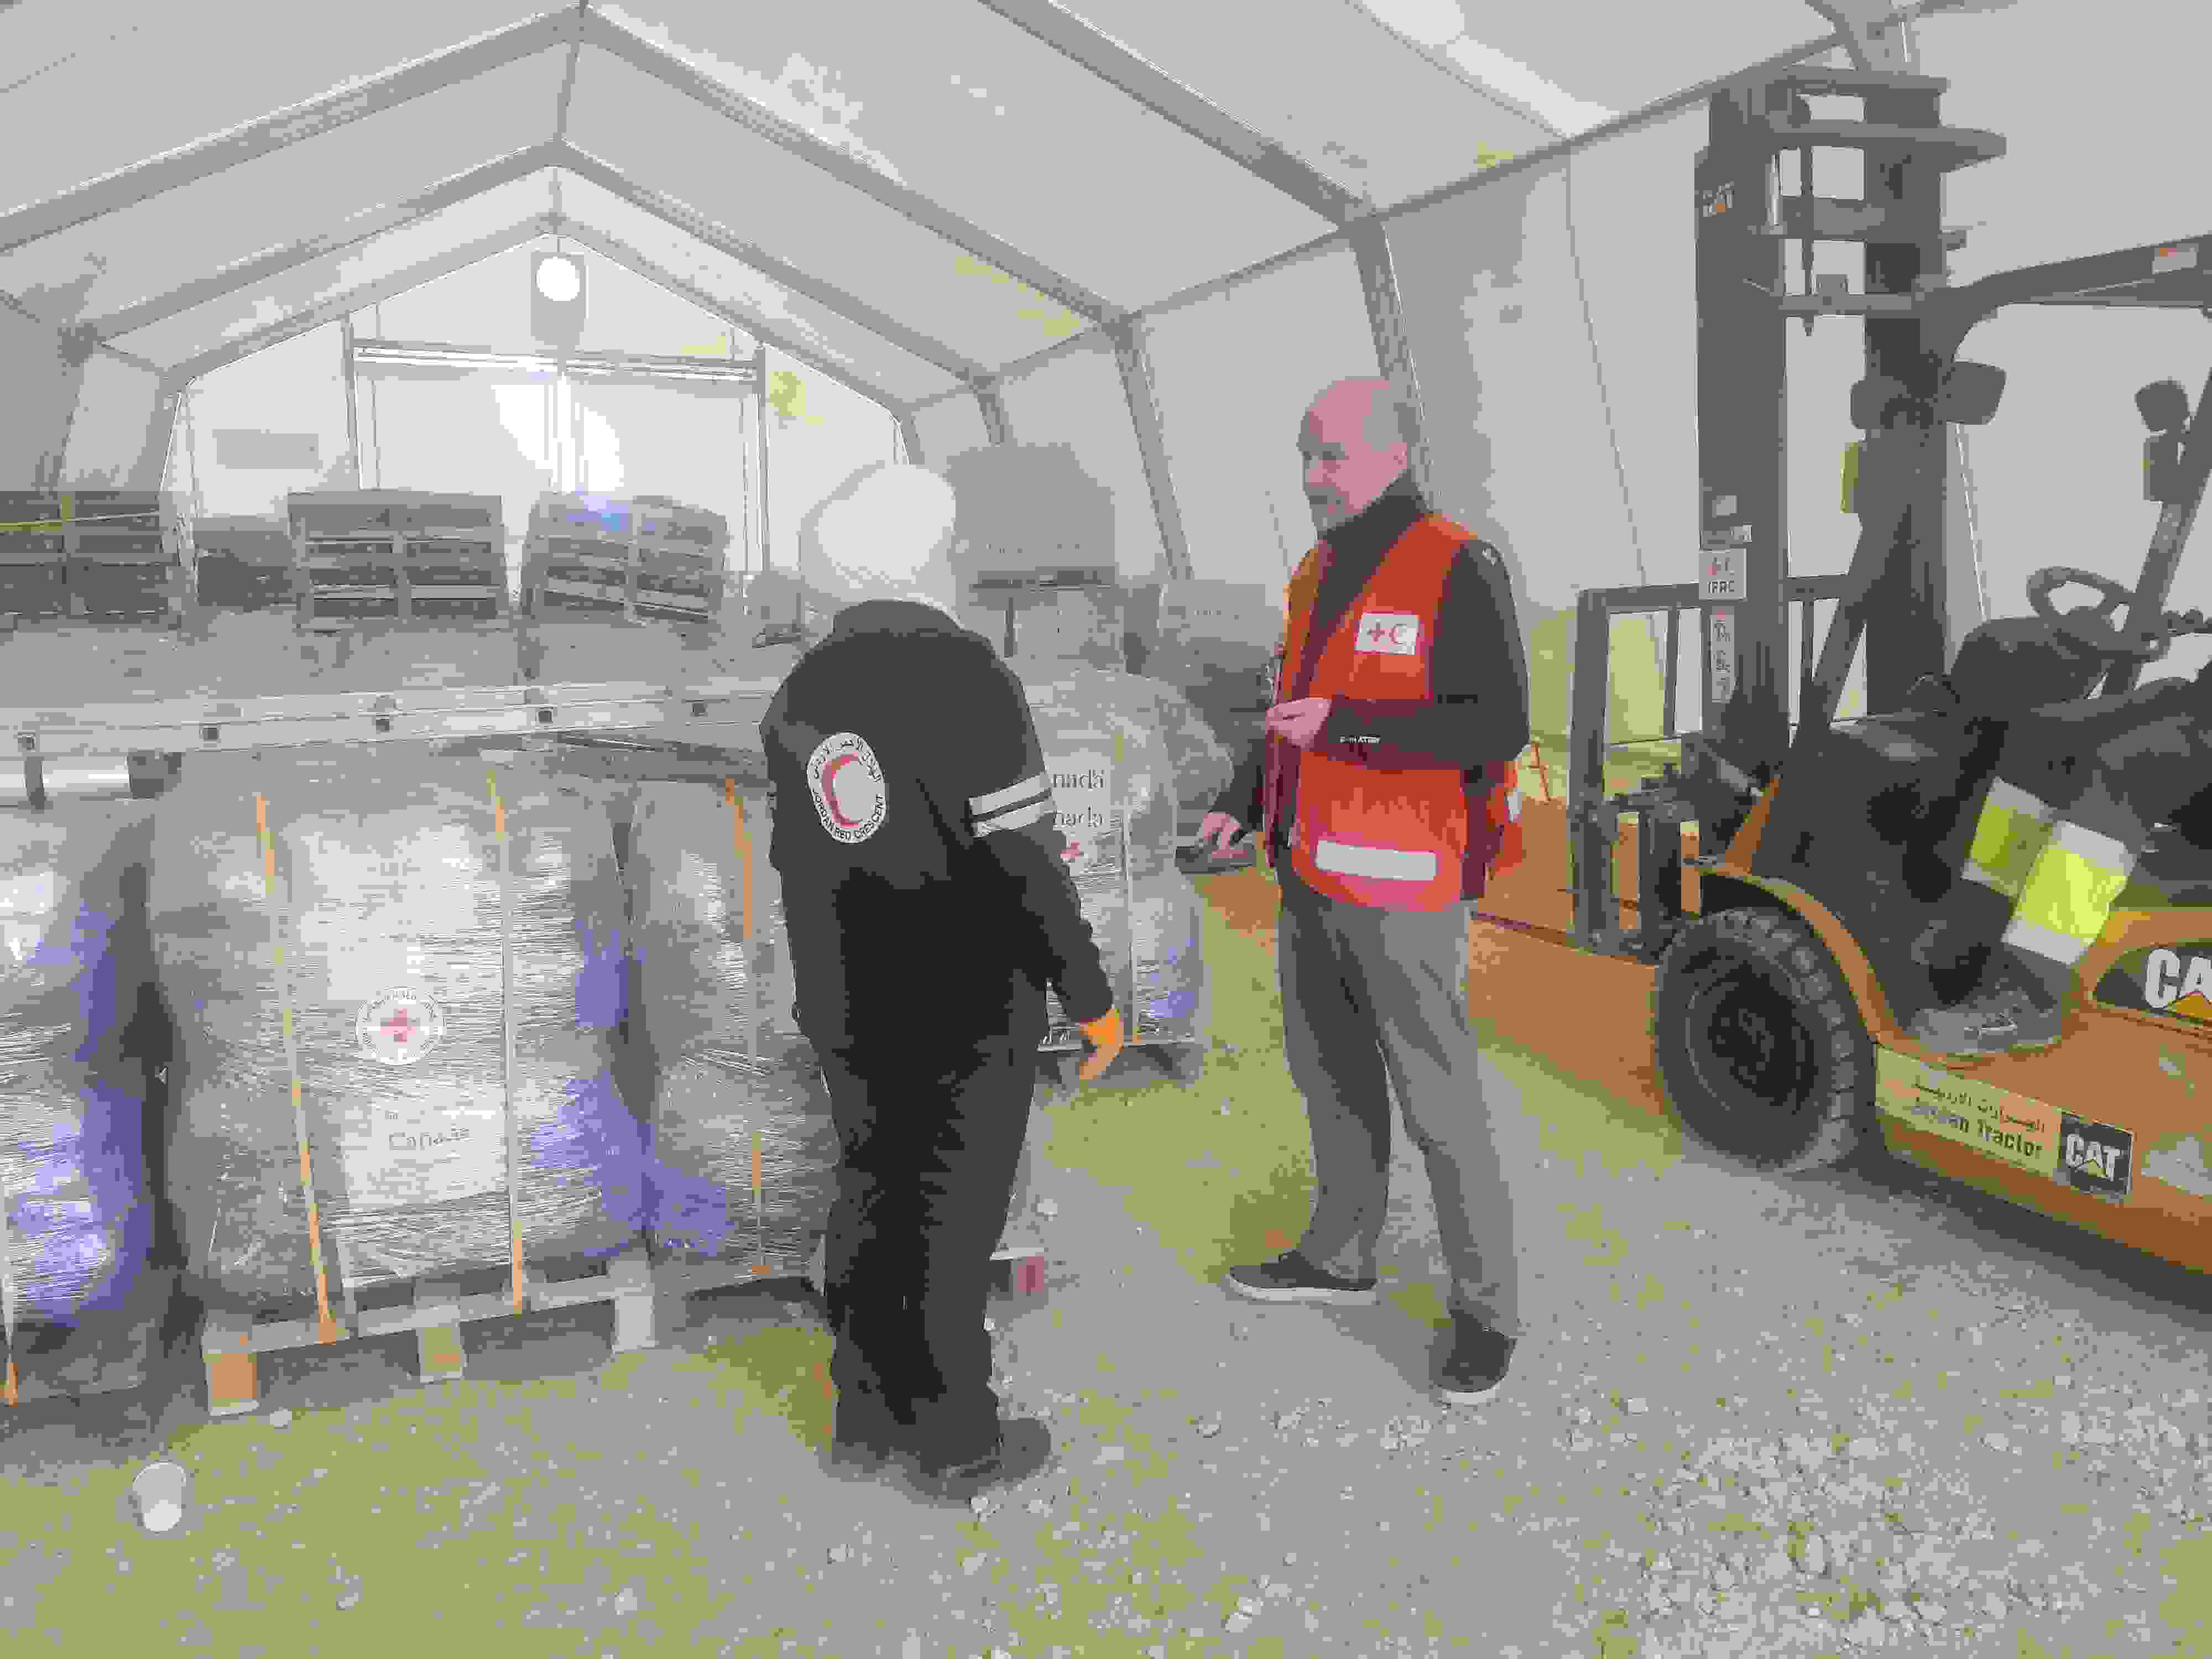 Jordanian Punaisen Puolikuun ja Suomen Punaisen Ristin työntekijät juttelevat Jordaniassa avustustarvikkeiden varastossa